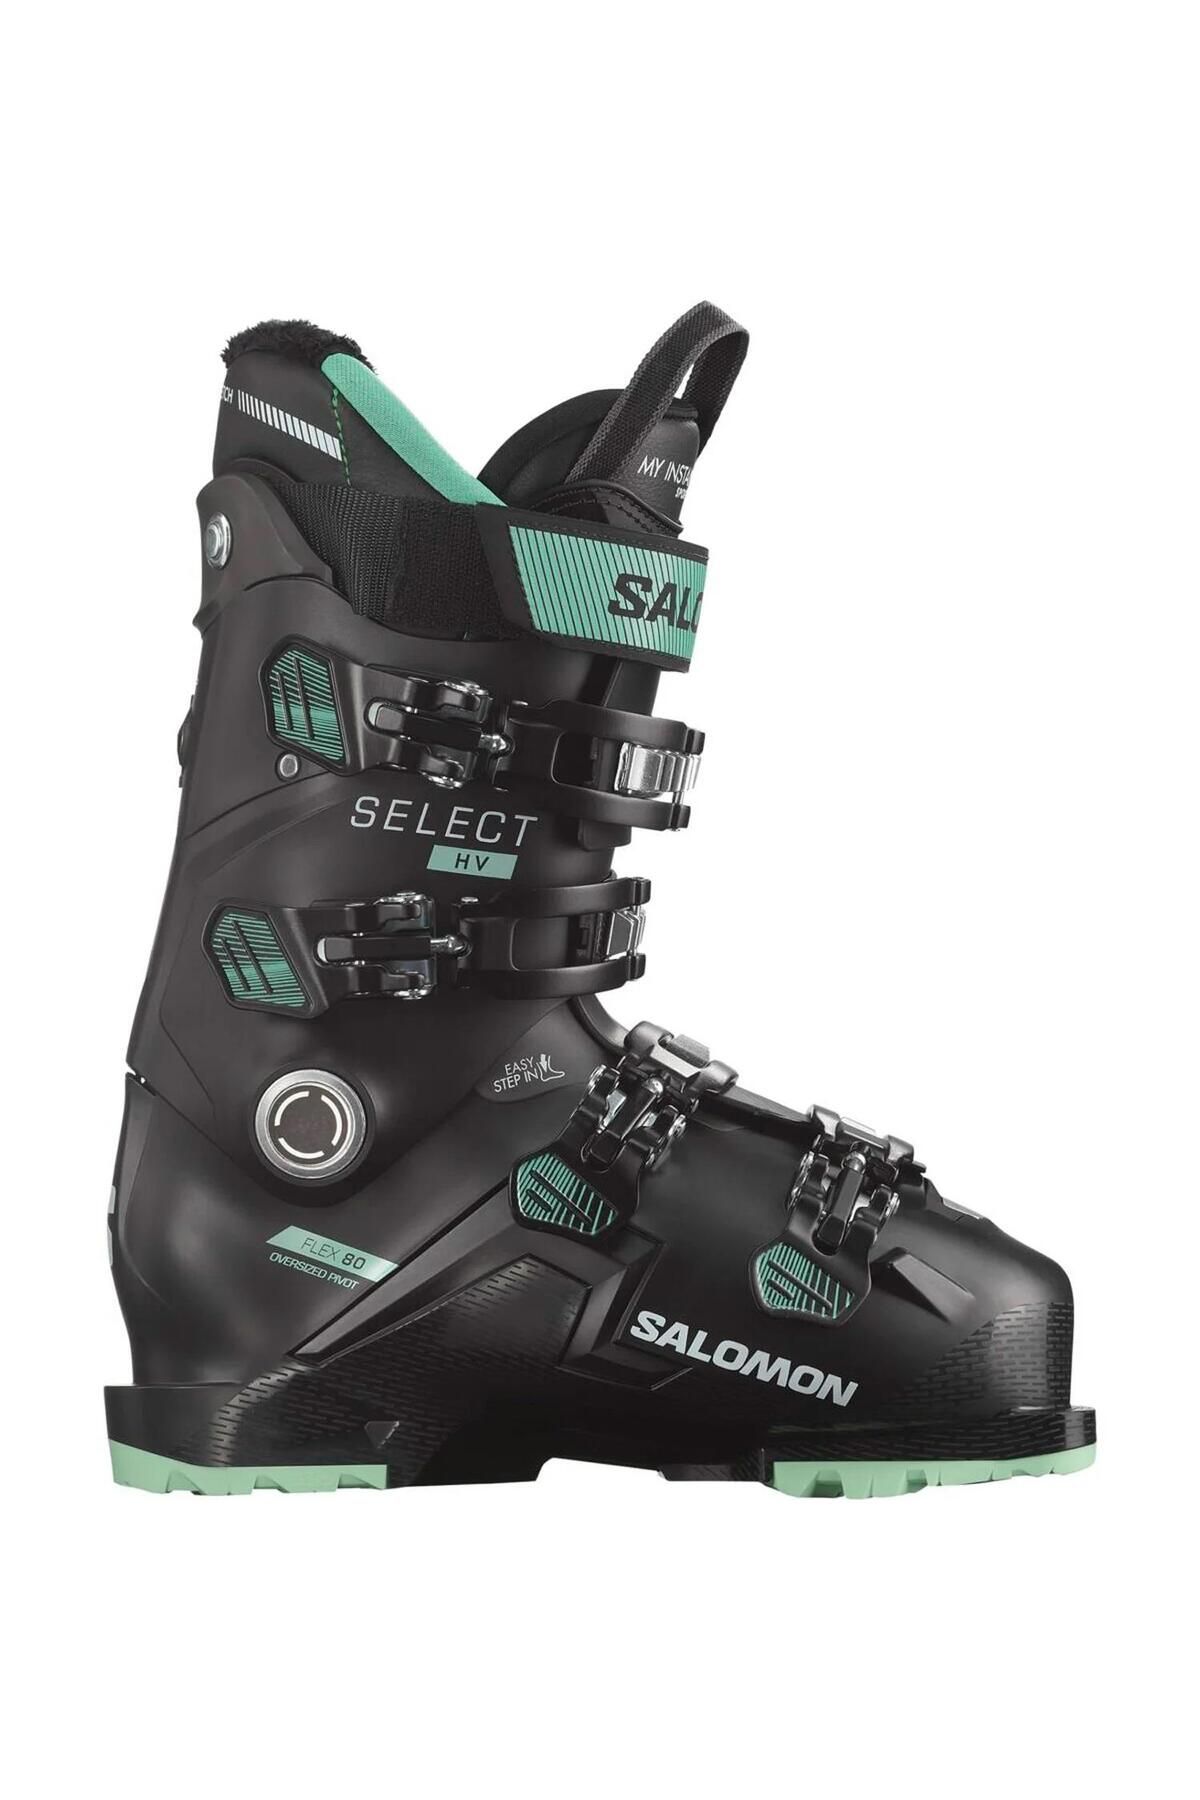 Salomon Select Hv 80 Kadın Kayak Ayakkabısı-l47343100spm